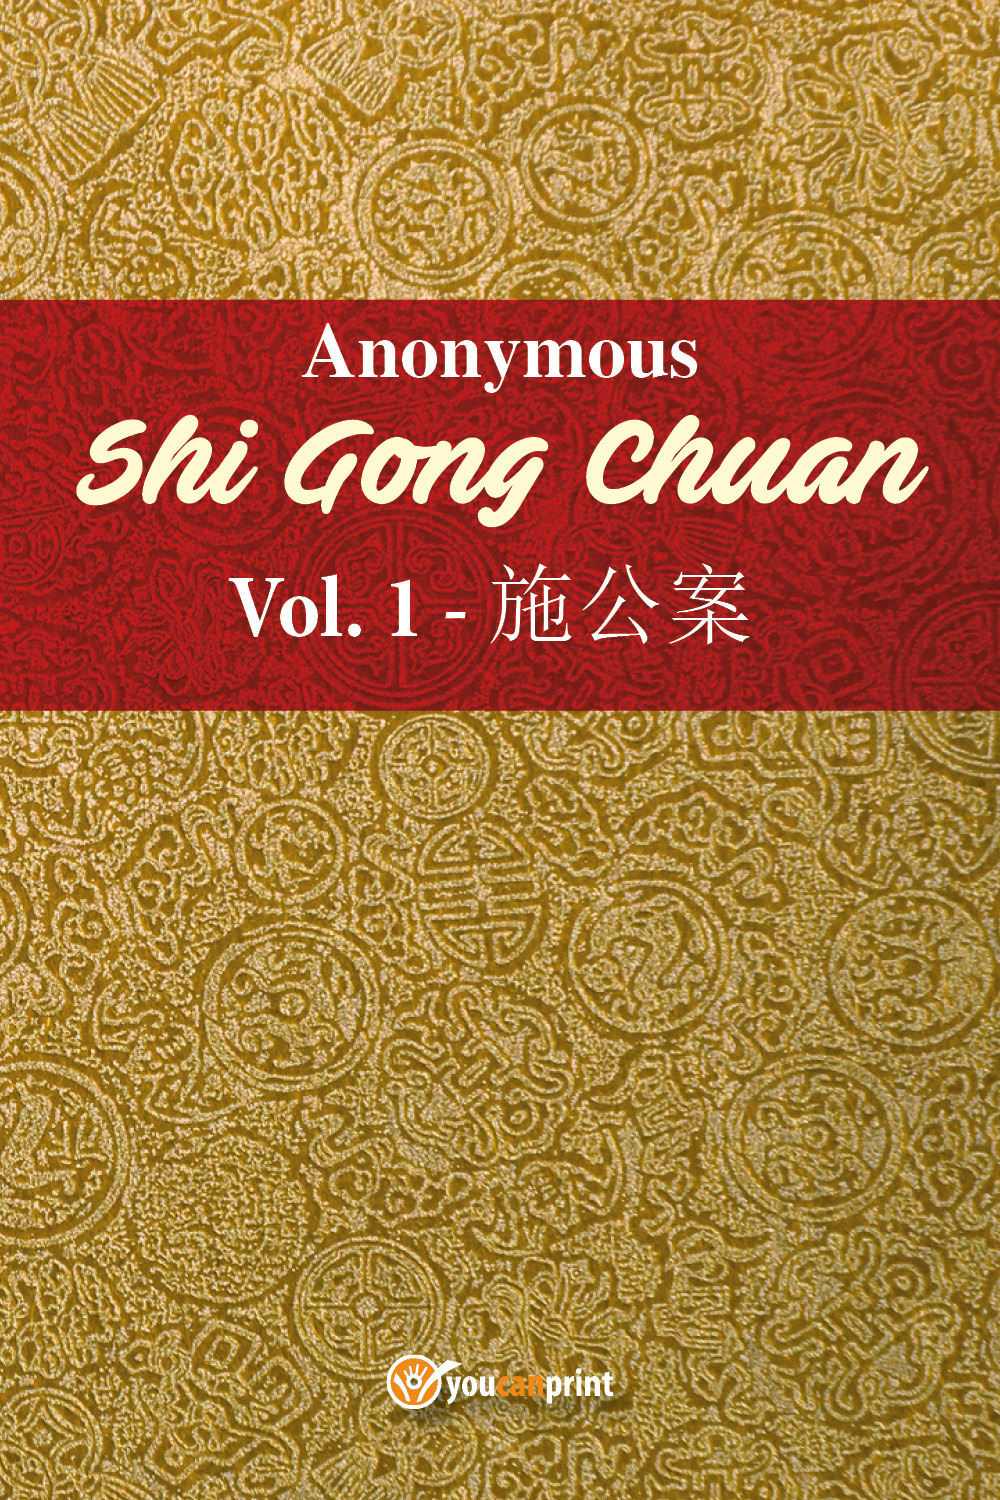 Shi Gong Chuan. Vol. 1